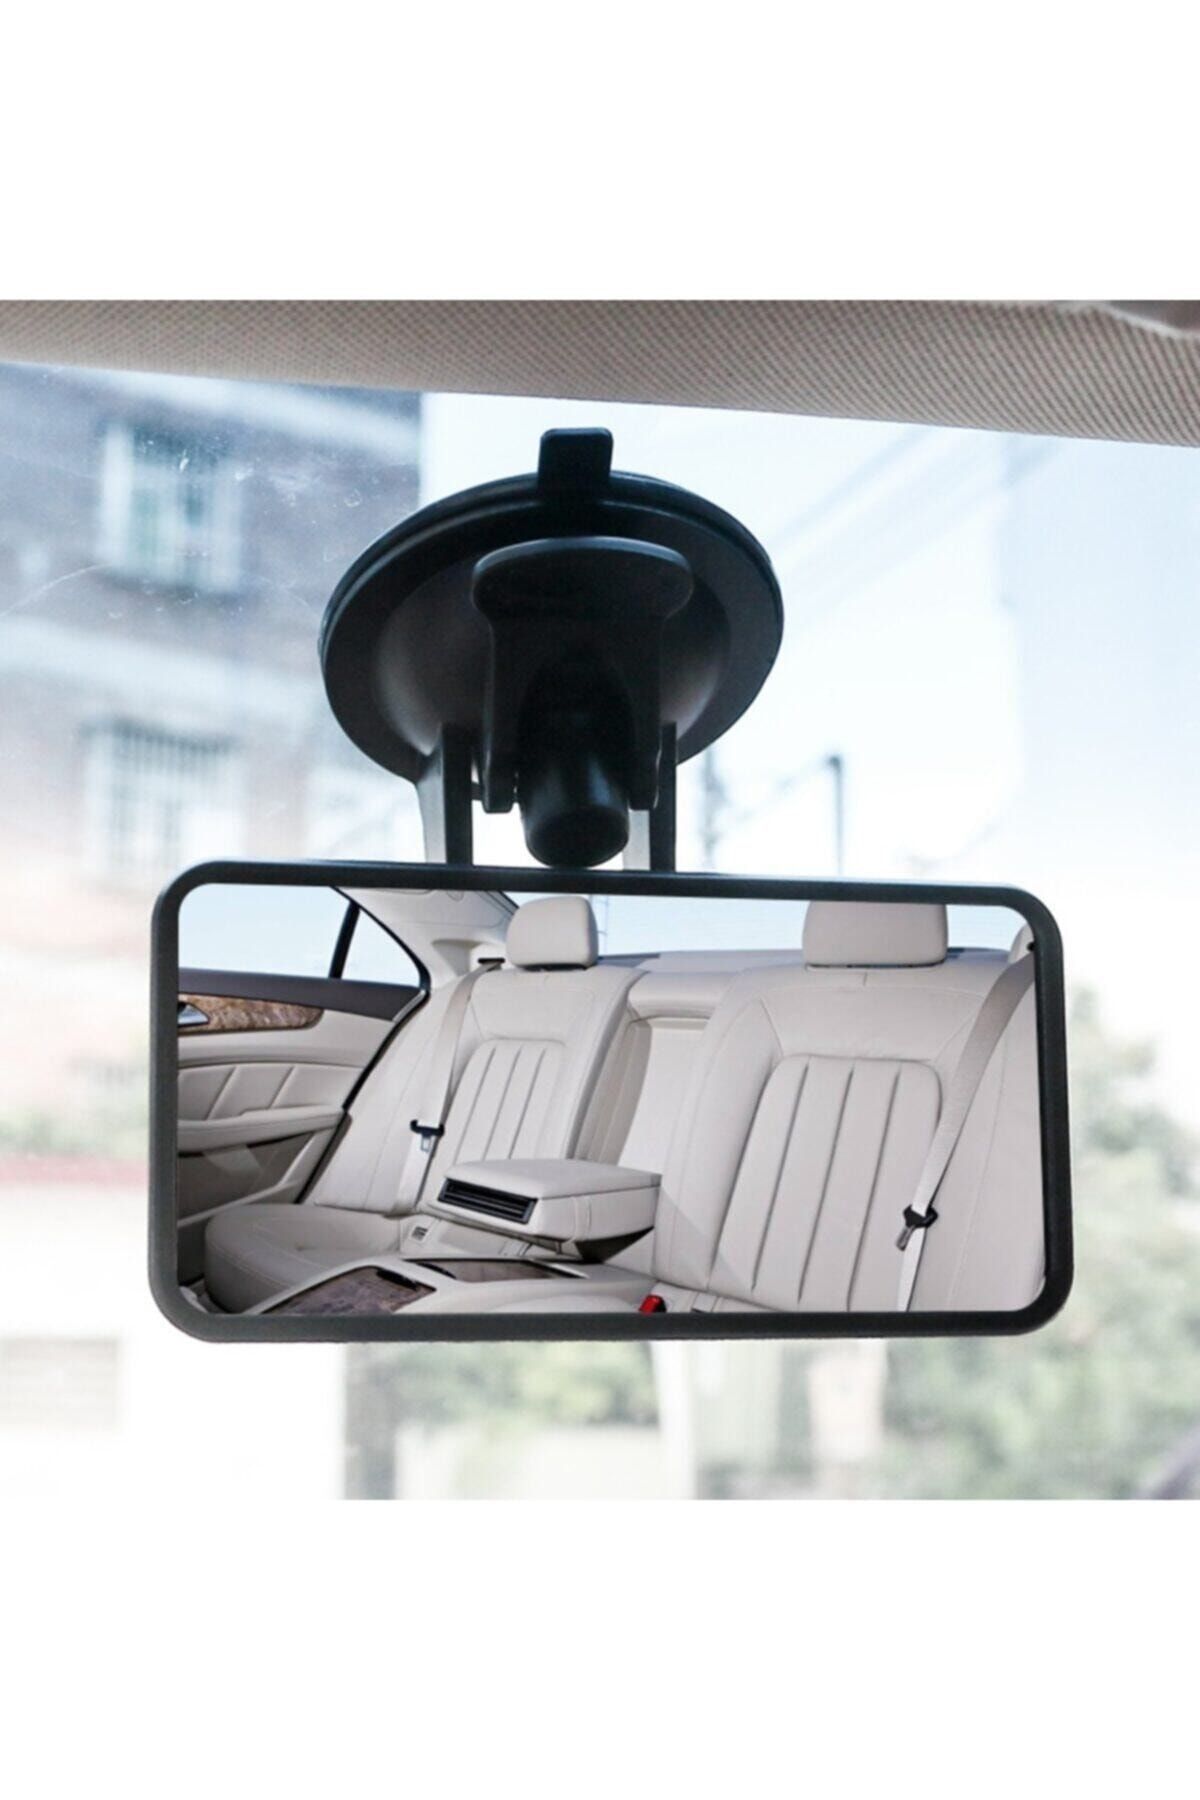 Genel Markalar Iç Dikiz Aynası Ölçüleri 6x12 Cm Araç Çocuk Iç Ayna